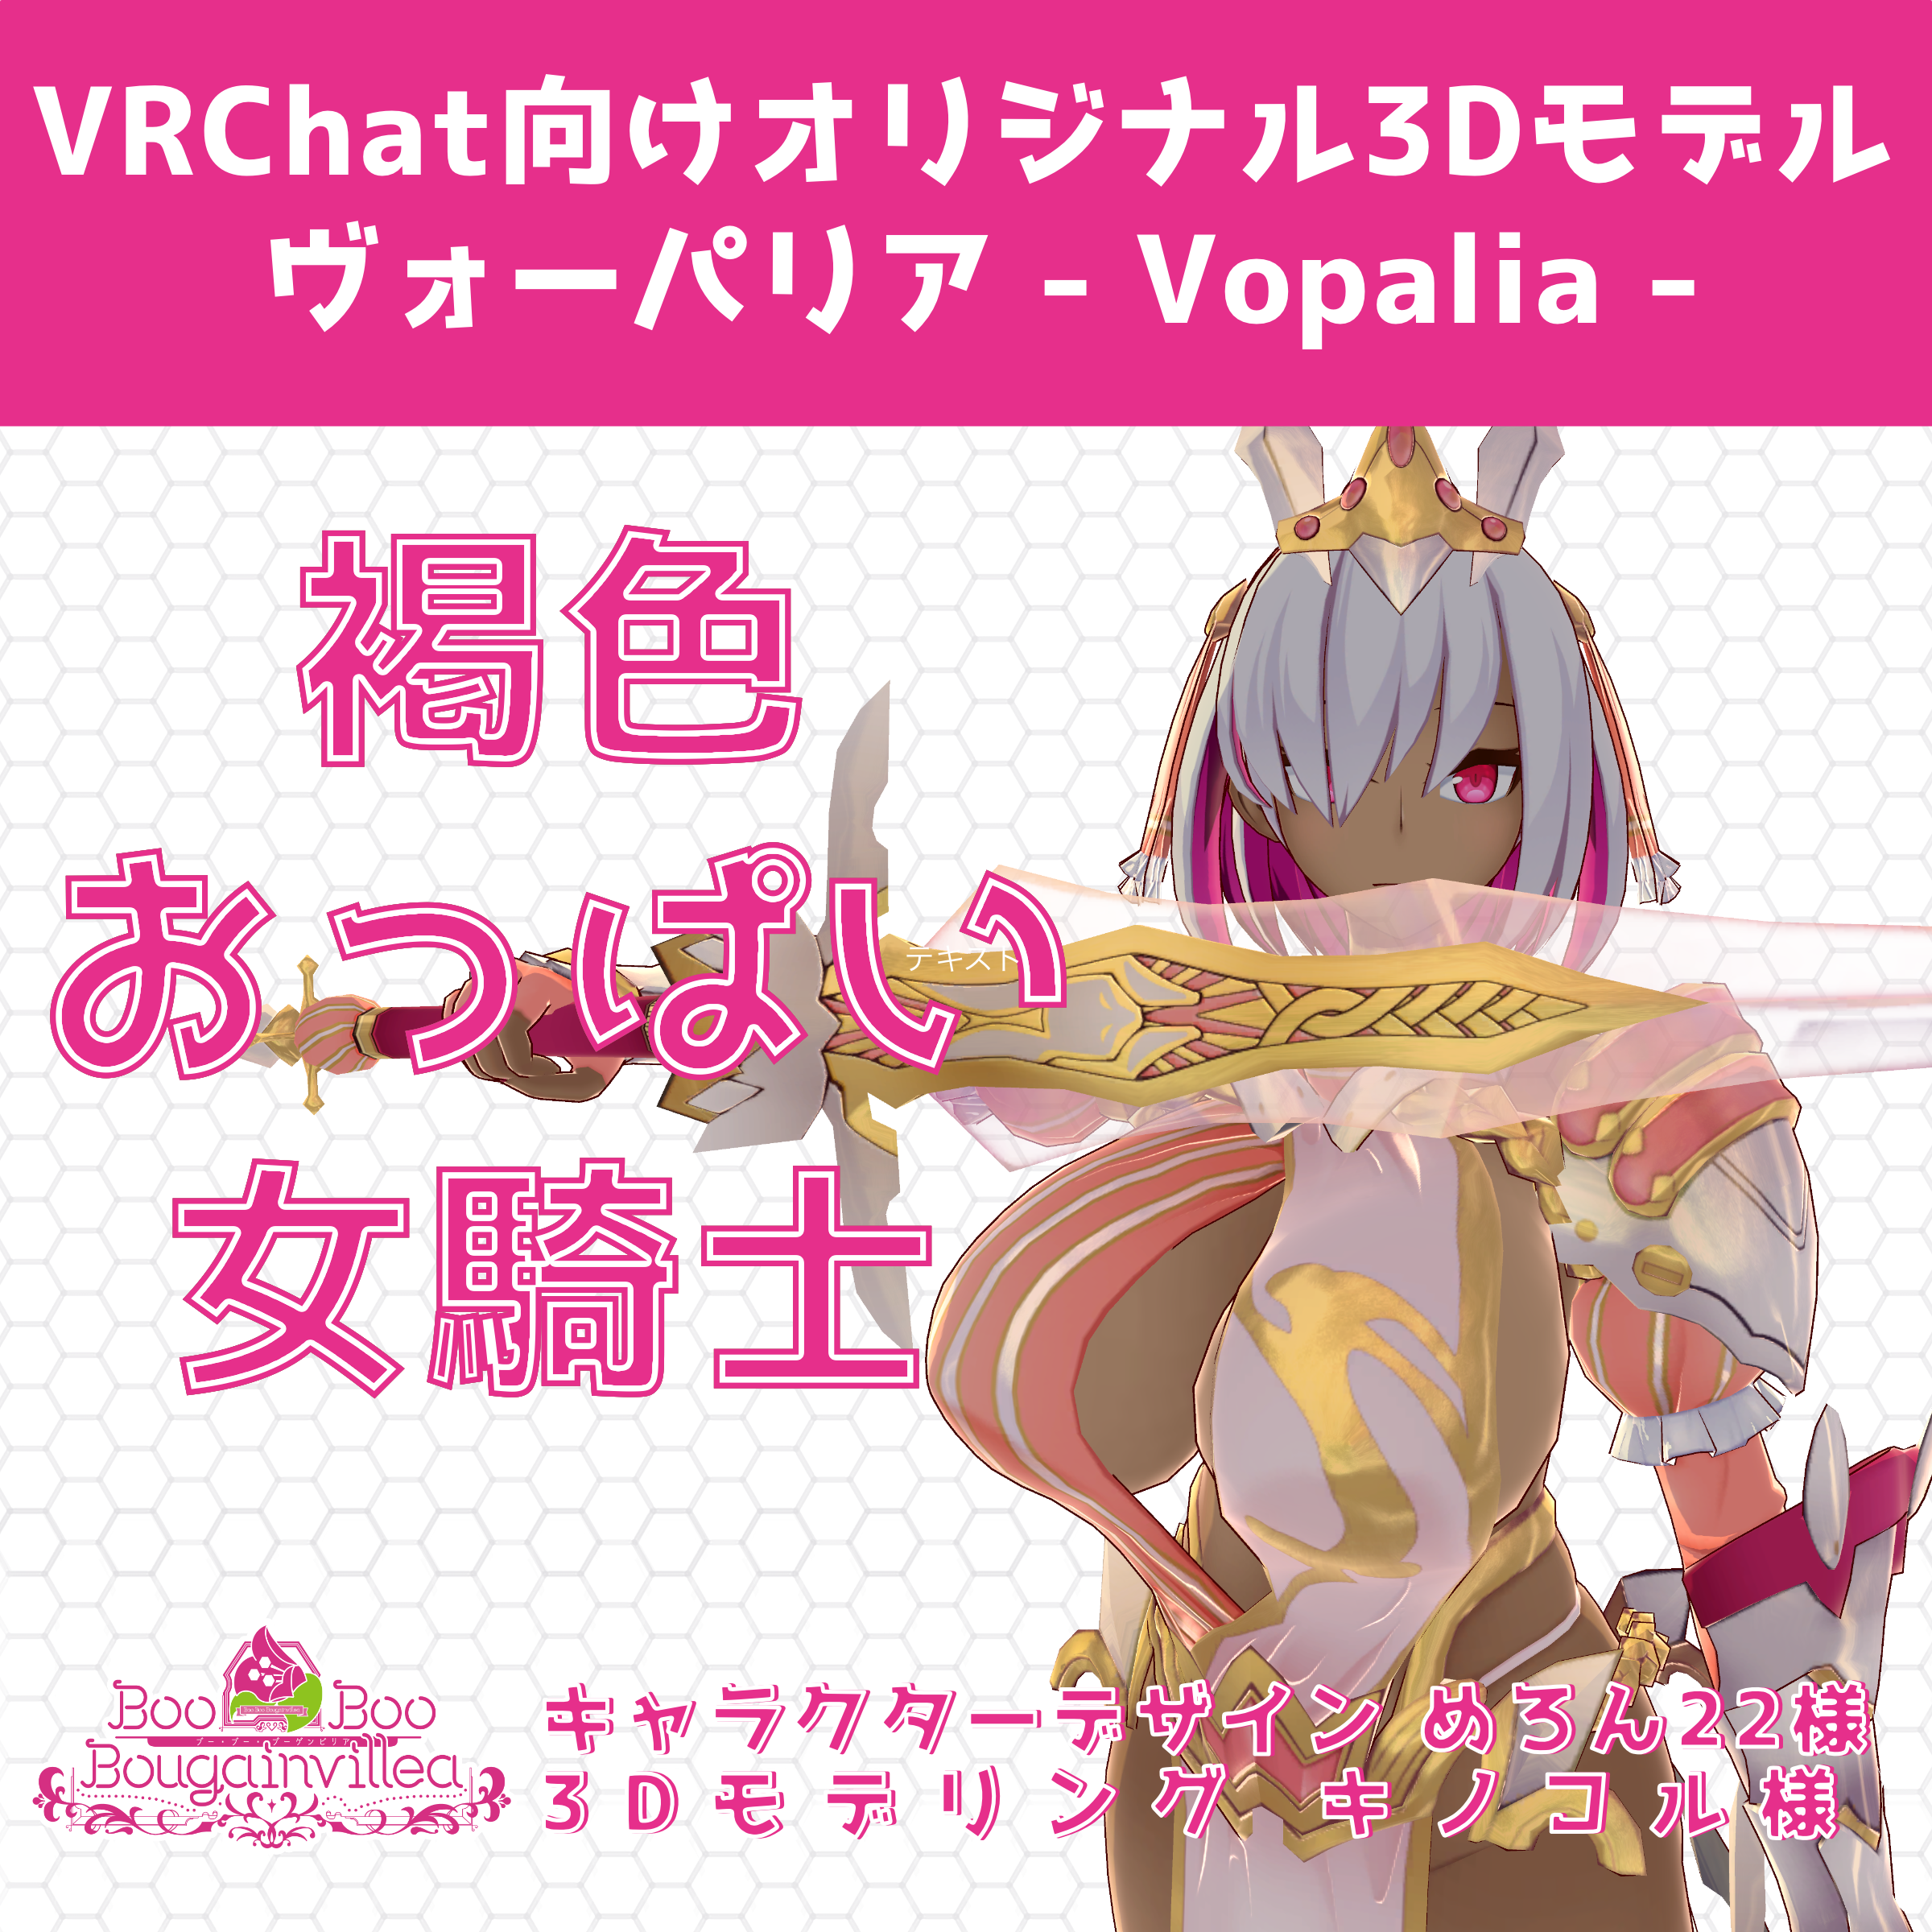 片目隠れの褐色巨乳女騎士アバター ヴォーパリア - Vorpalia - VRChat向けオリジナル3Dモデル 素体付